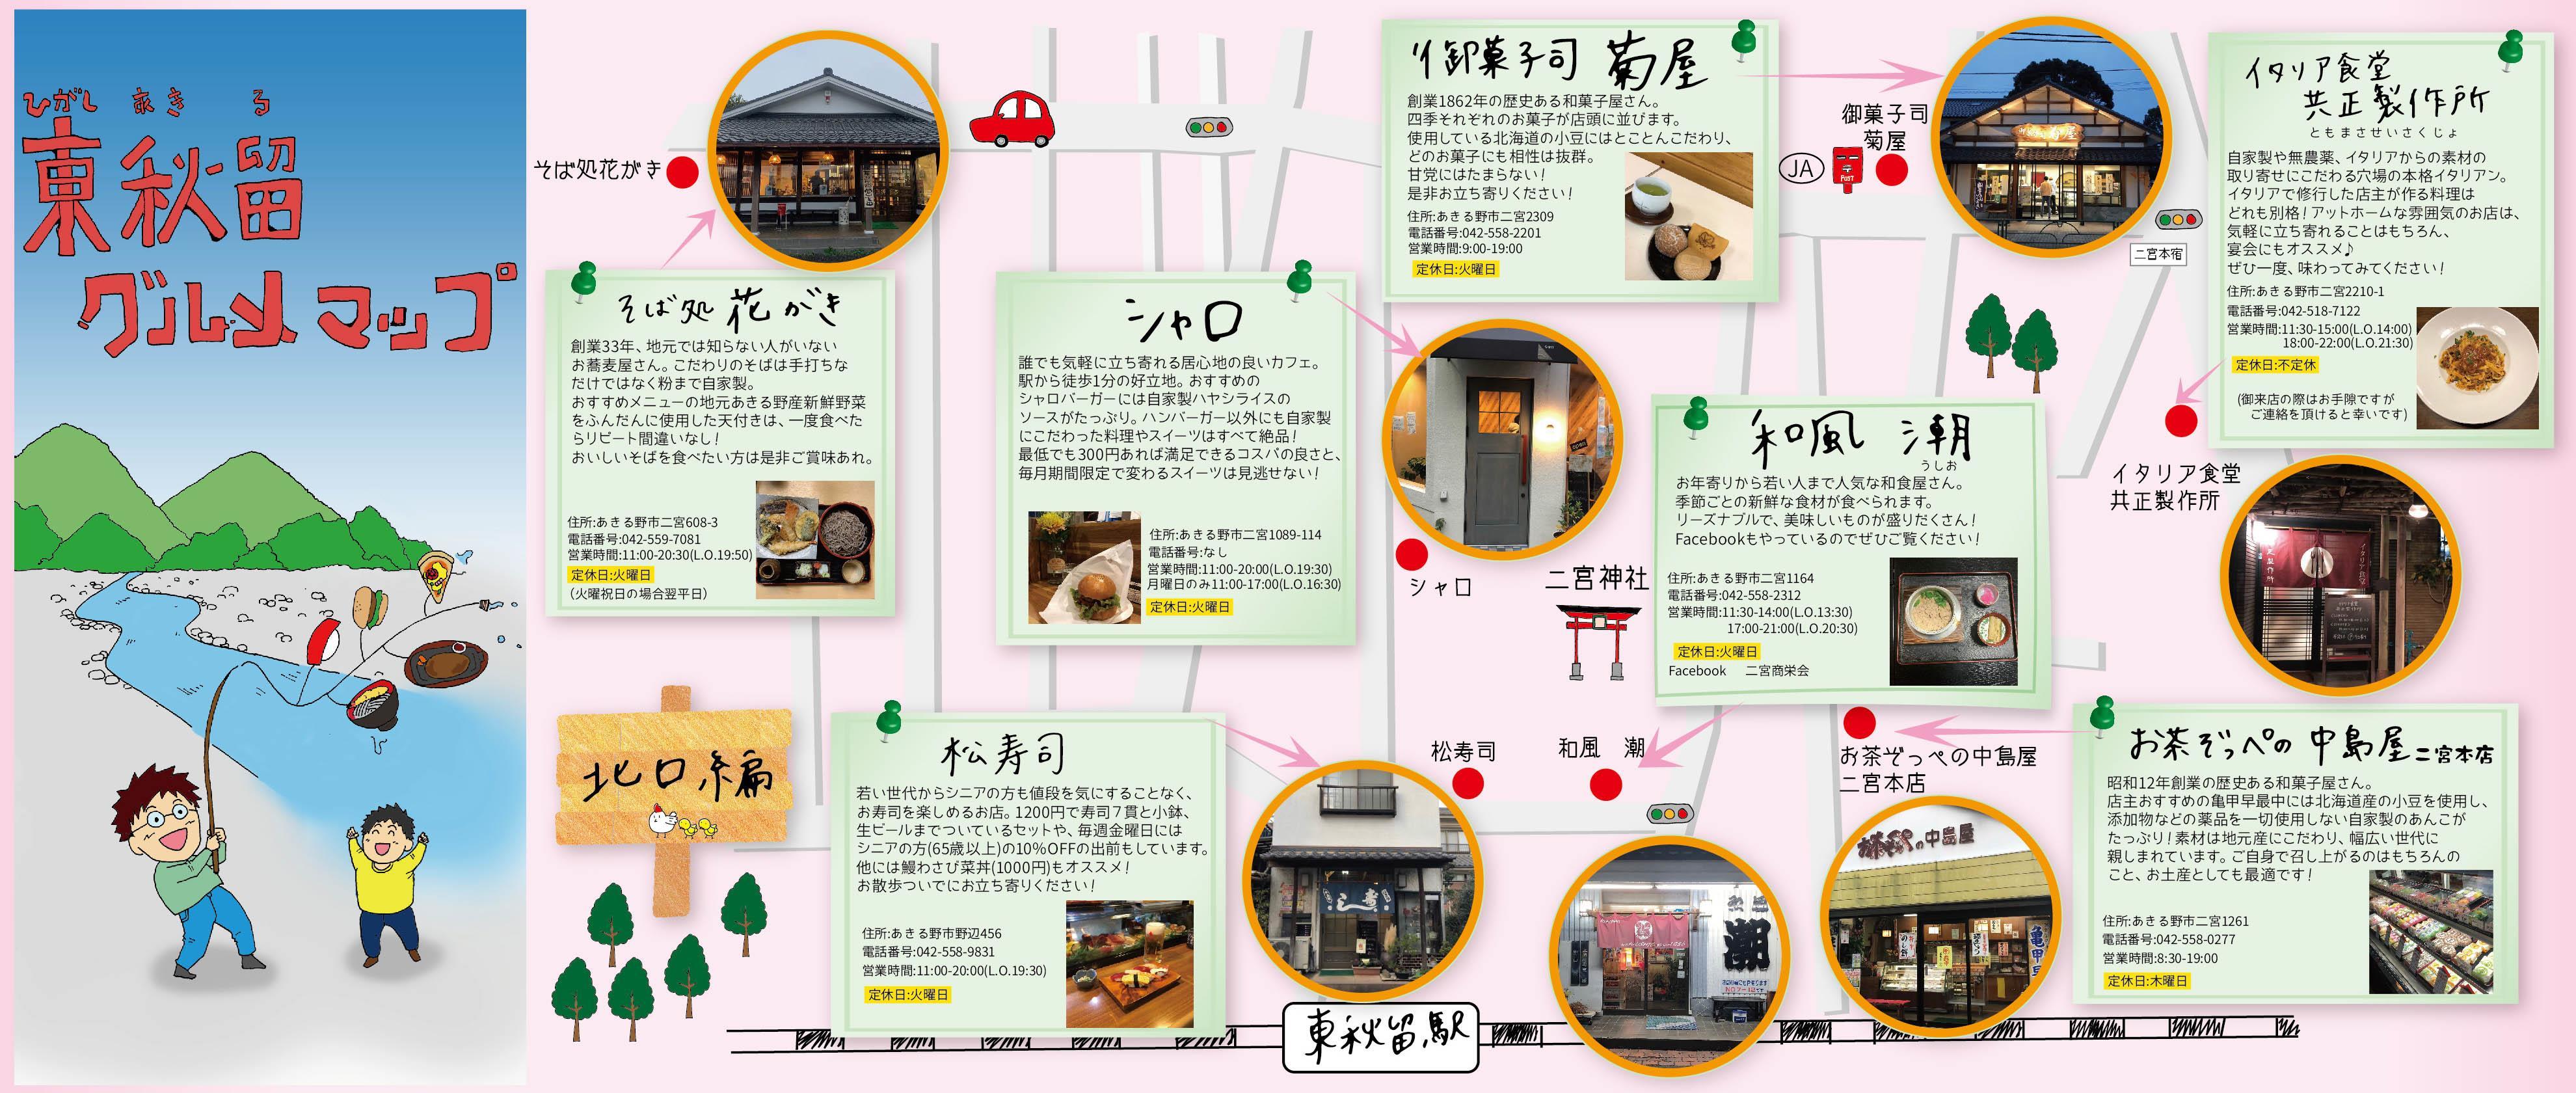 明星大学学生が店舗を取材して作成した 「東秋留グルメマップ」。秋川渓谷の食の魅力を発信